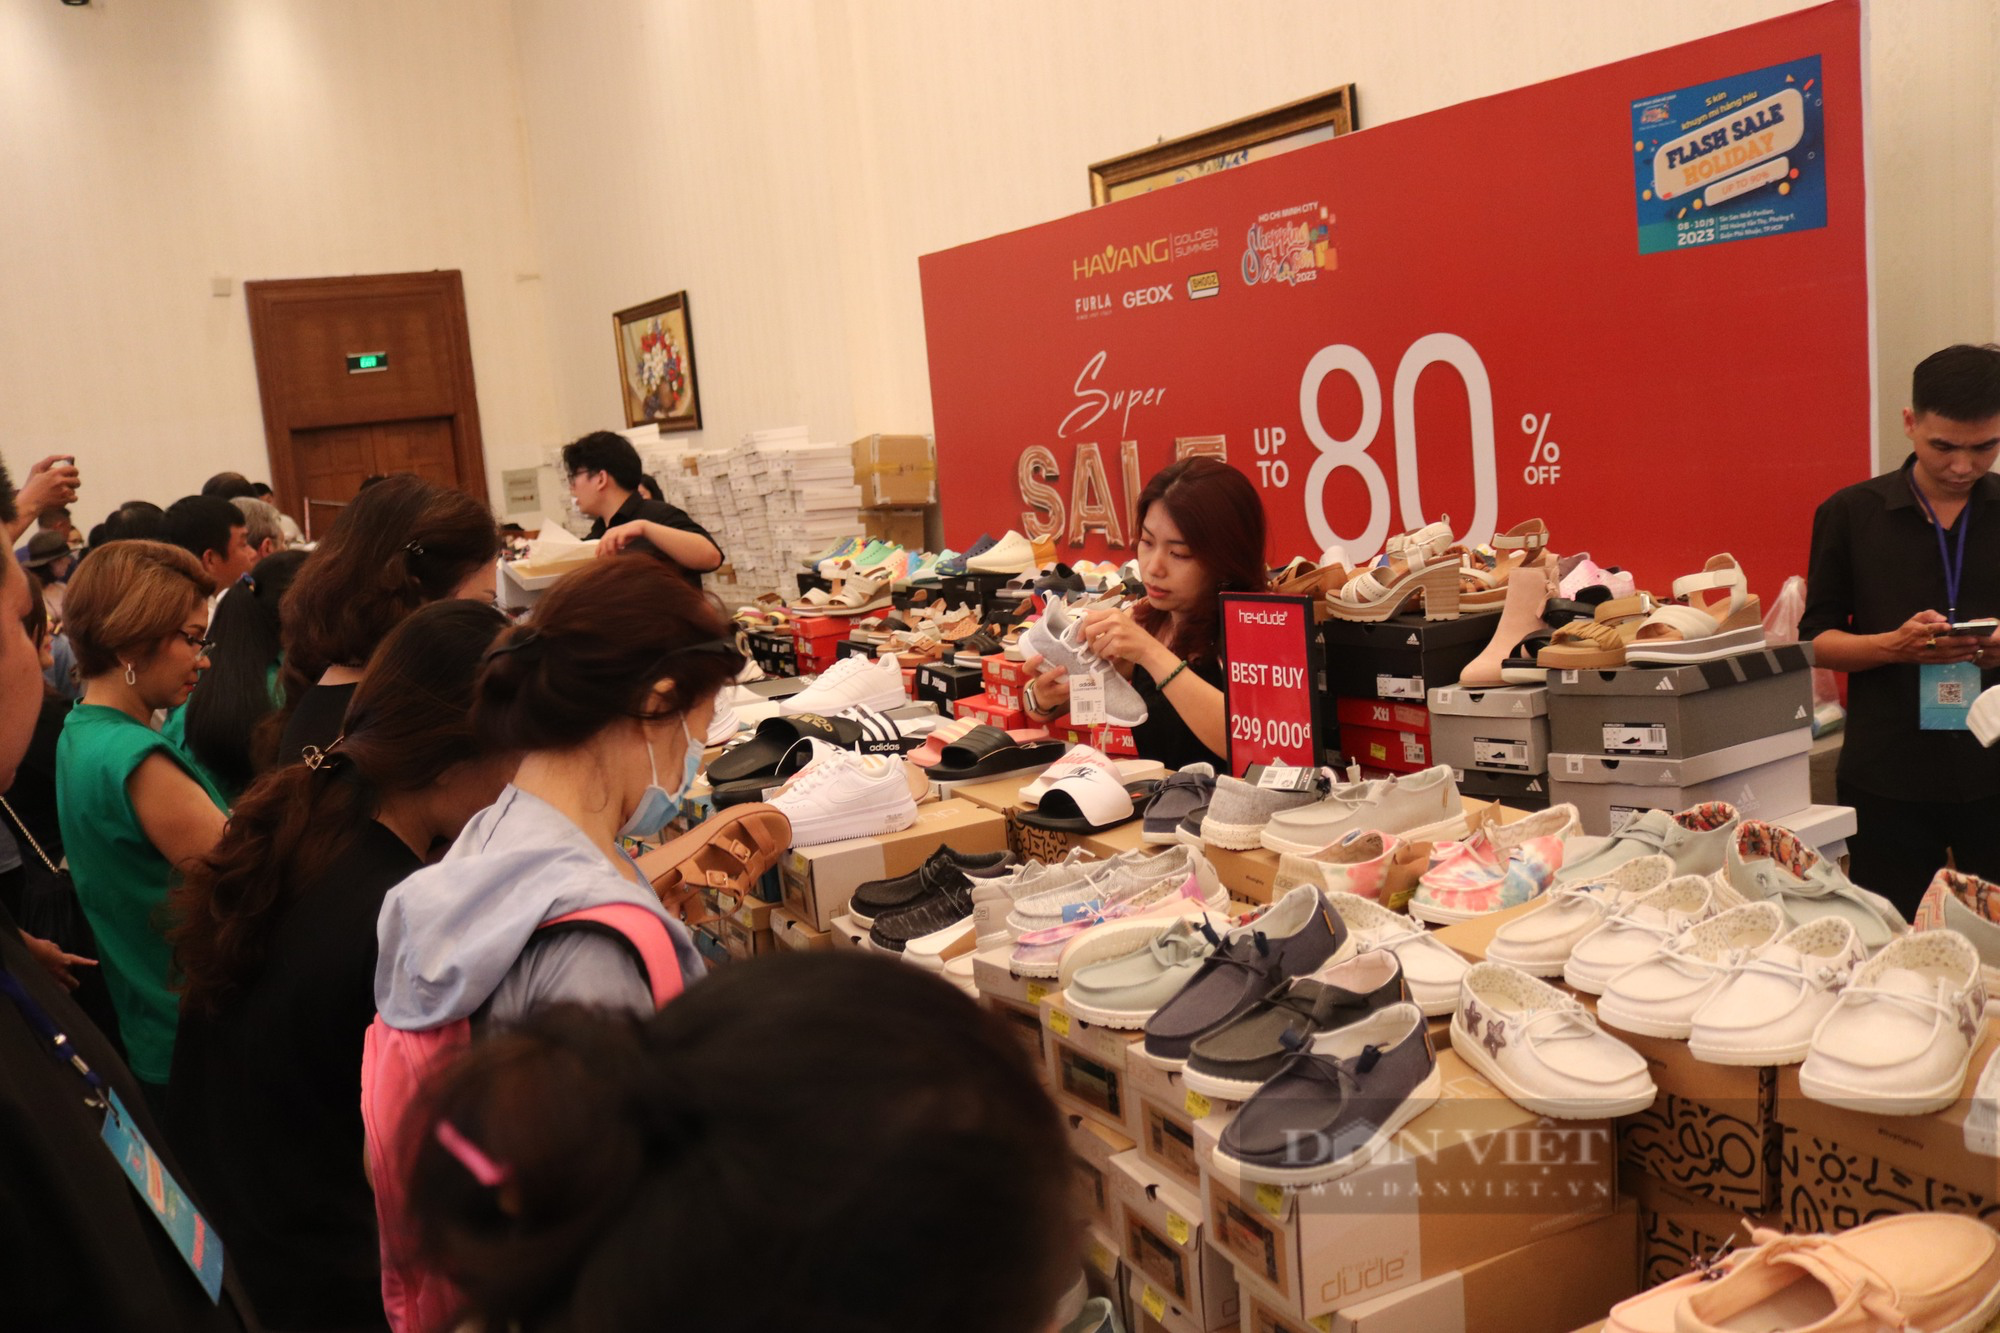 Người Sài Gòn chen chân mua hàng hiệu giảm giá tới 90% - Ảnh 1.